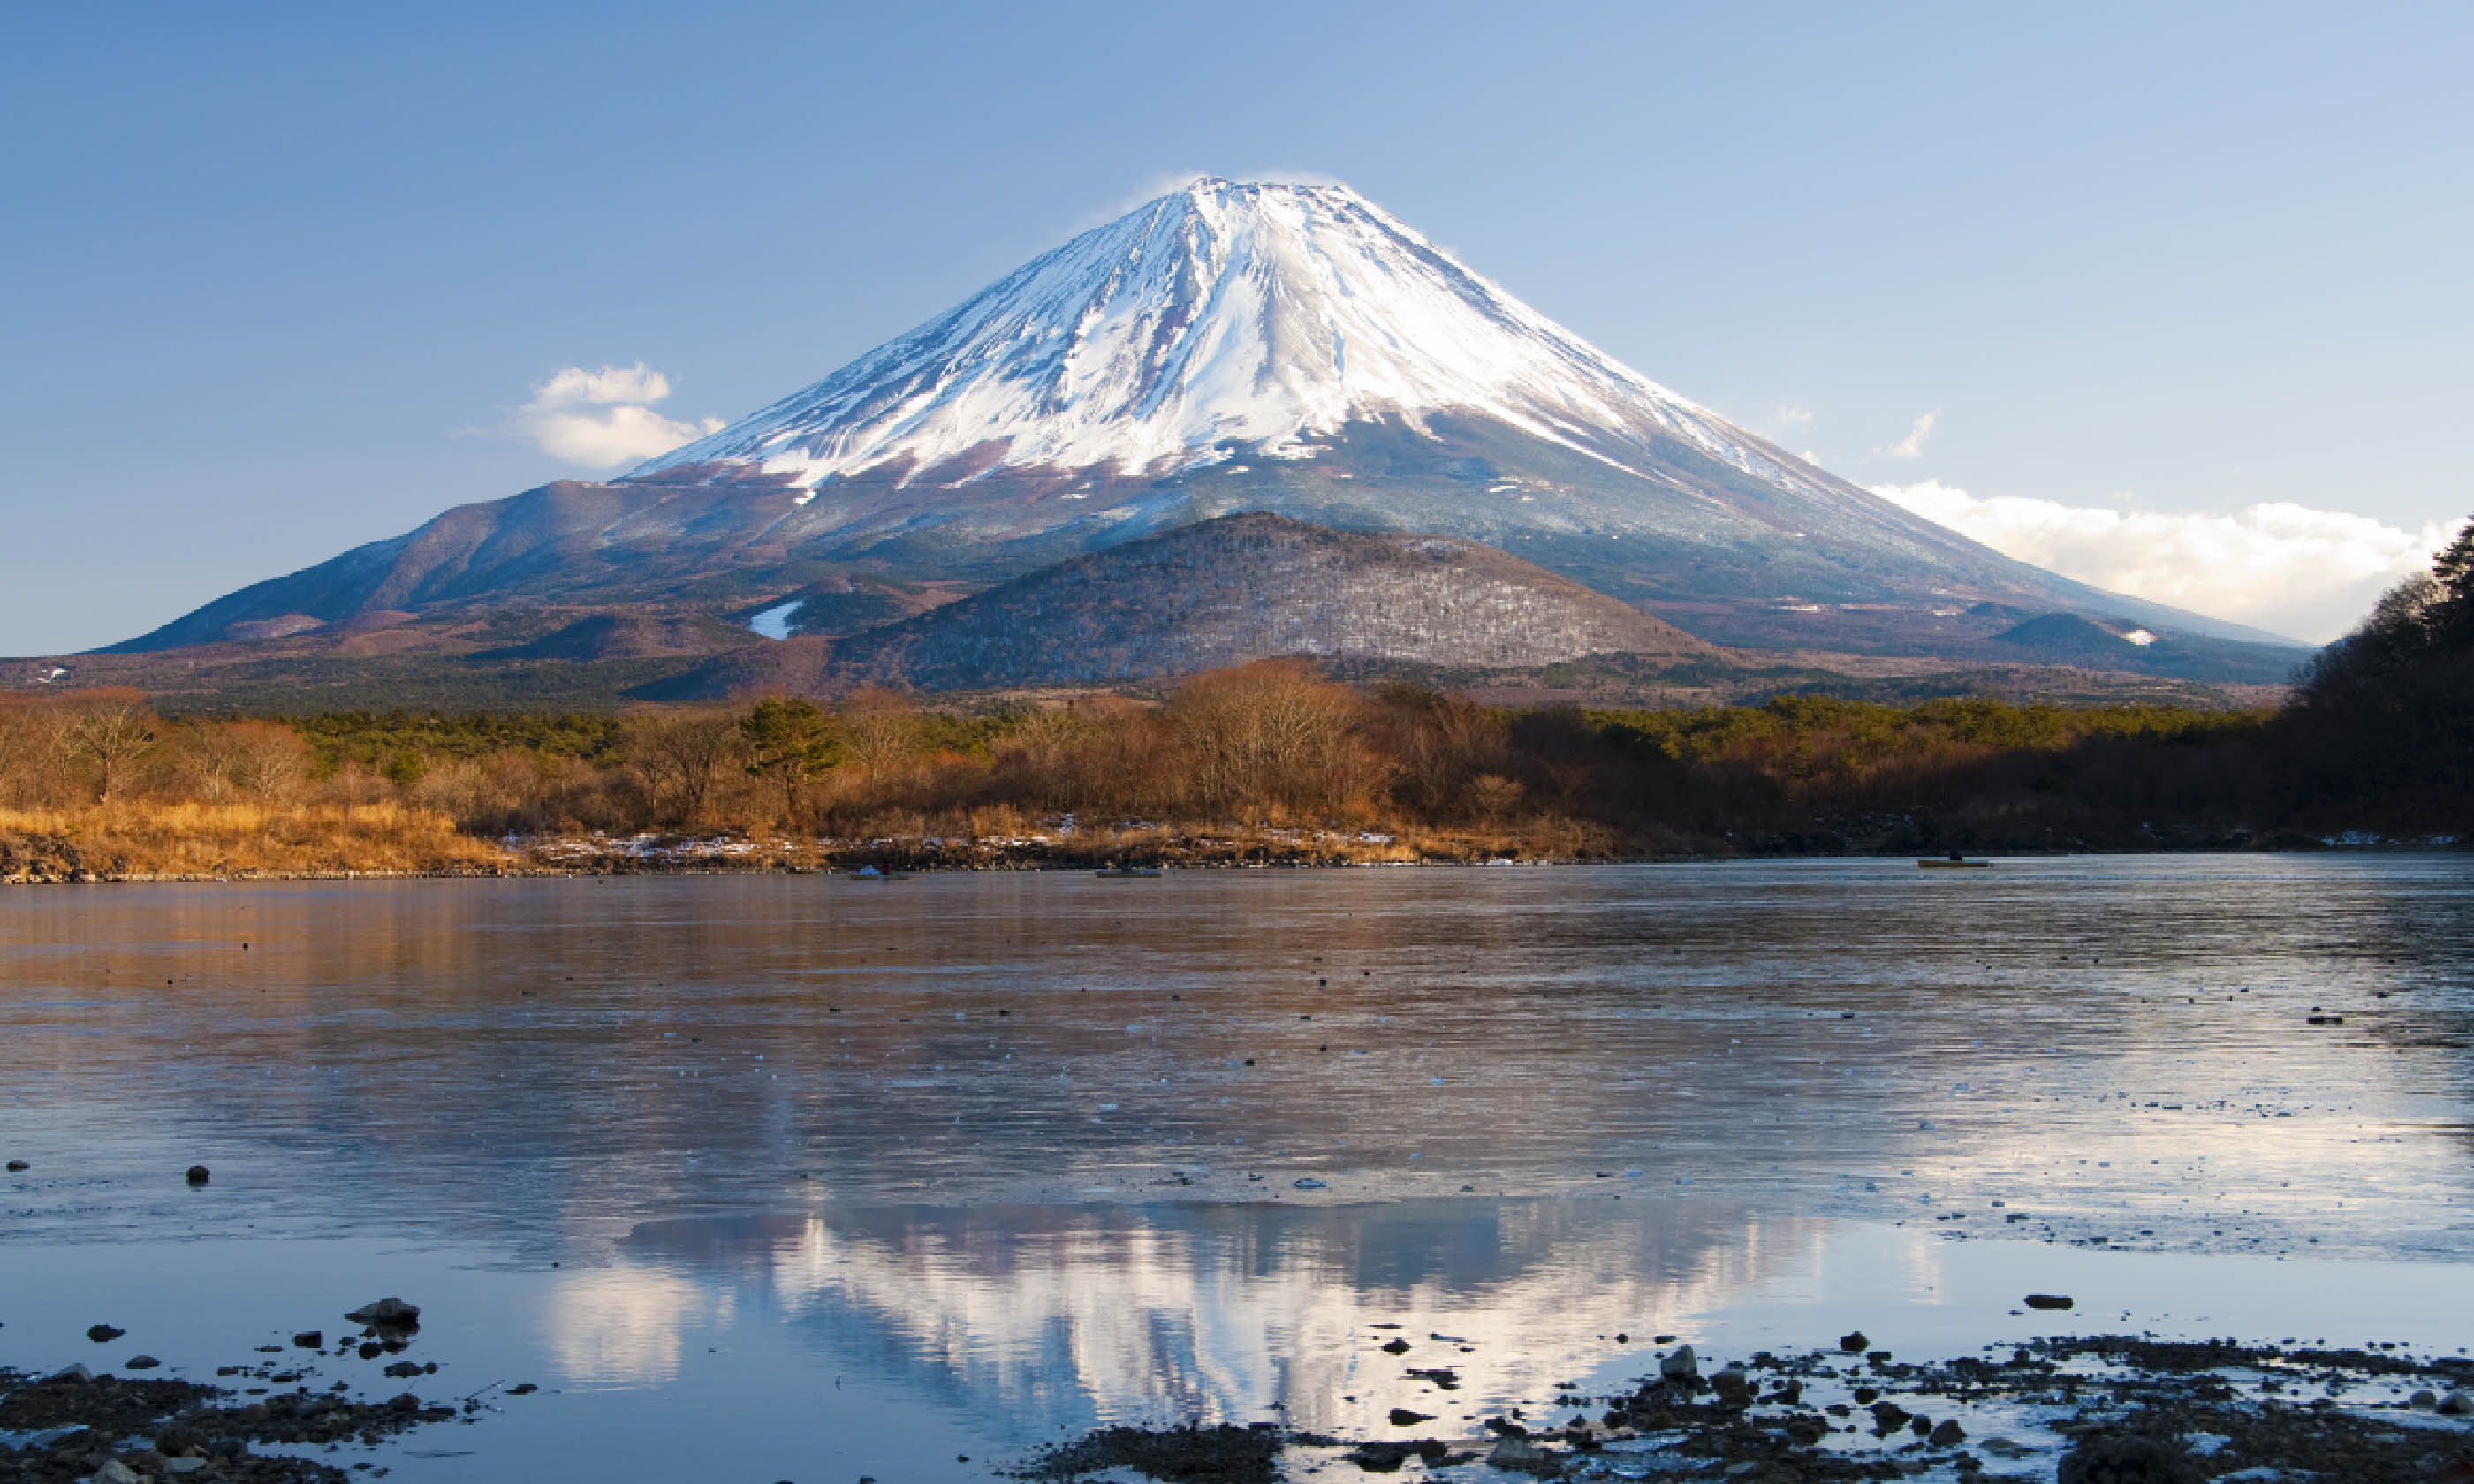 Mount Fuji Reflection (Shutterstock)